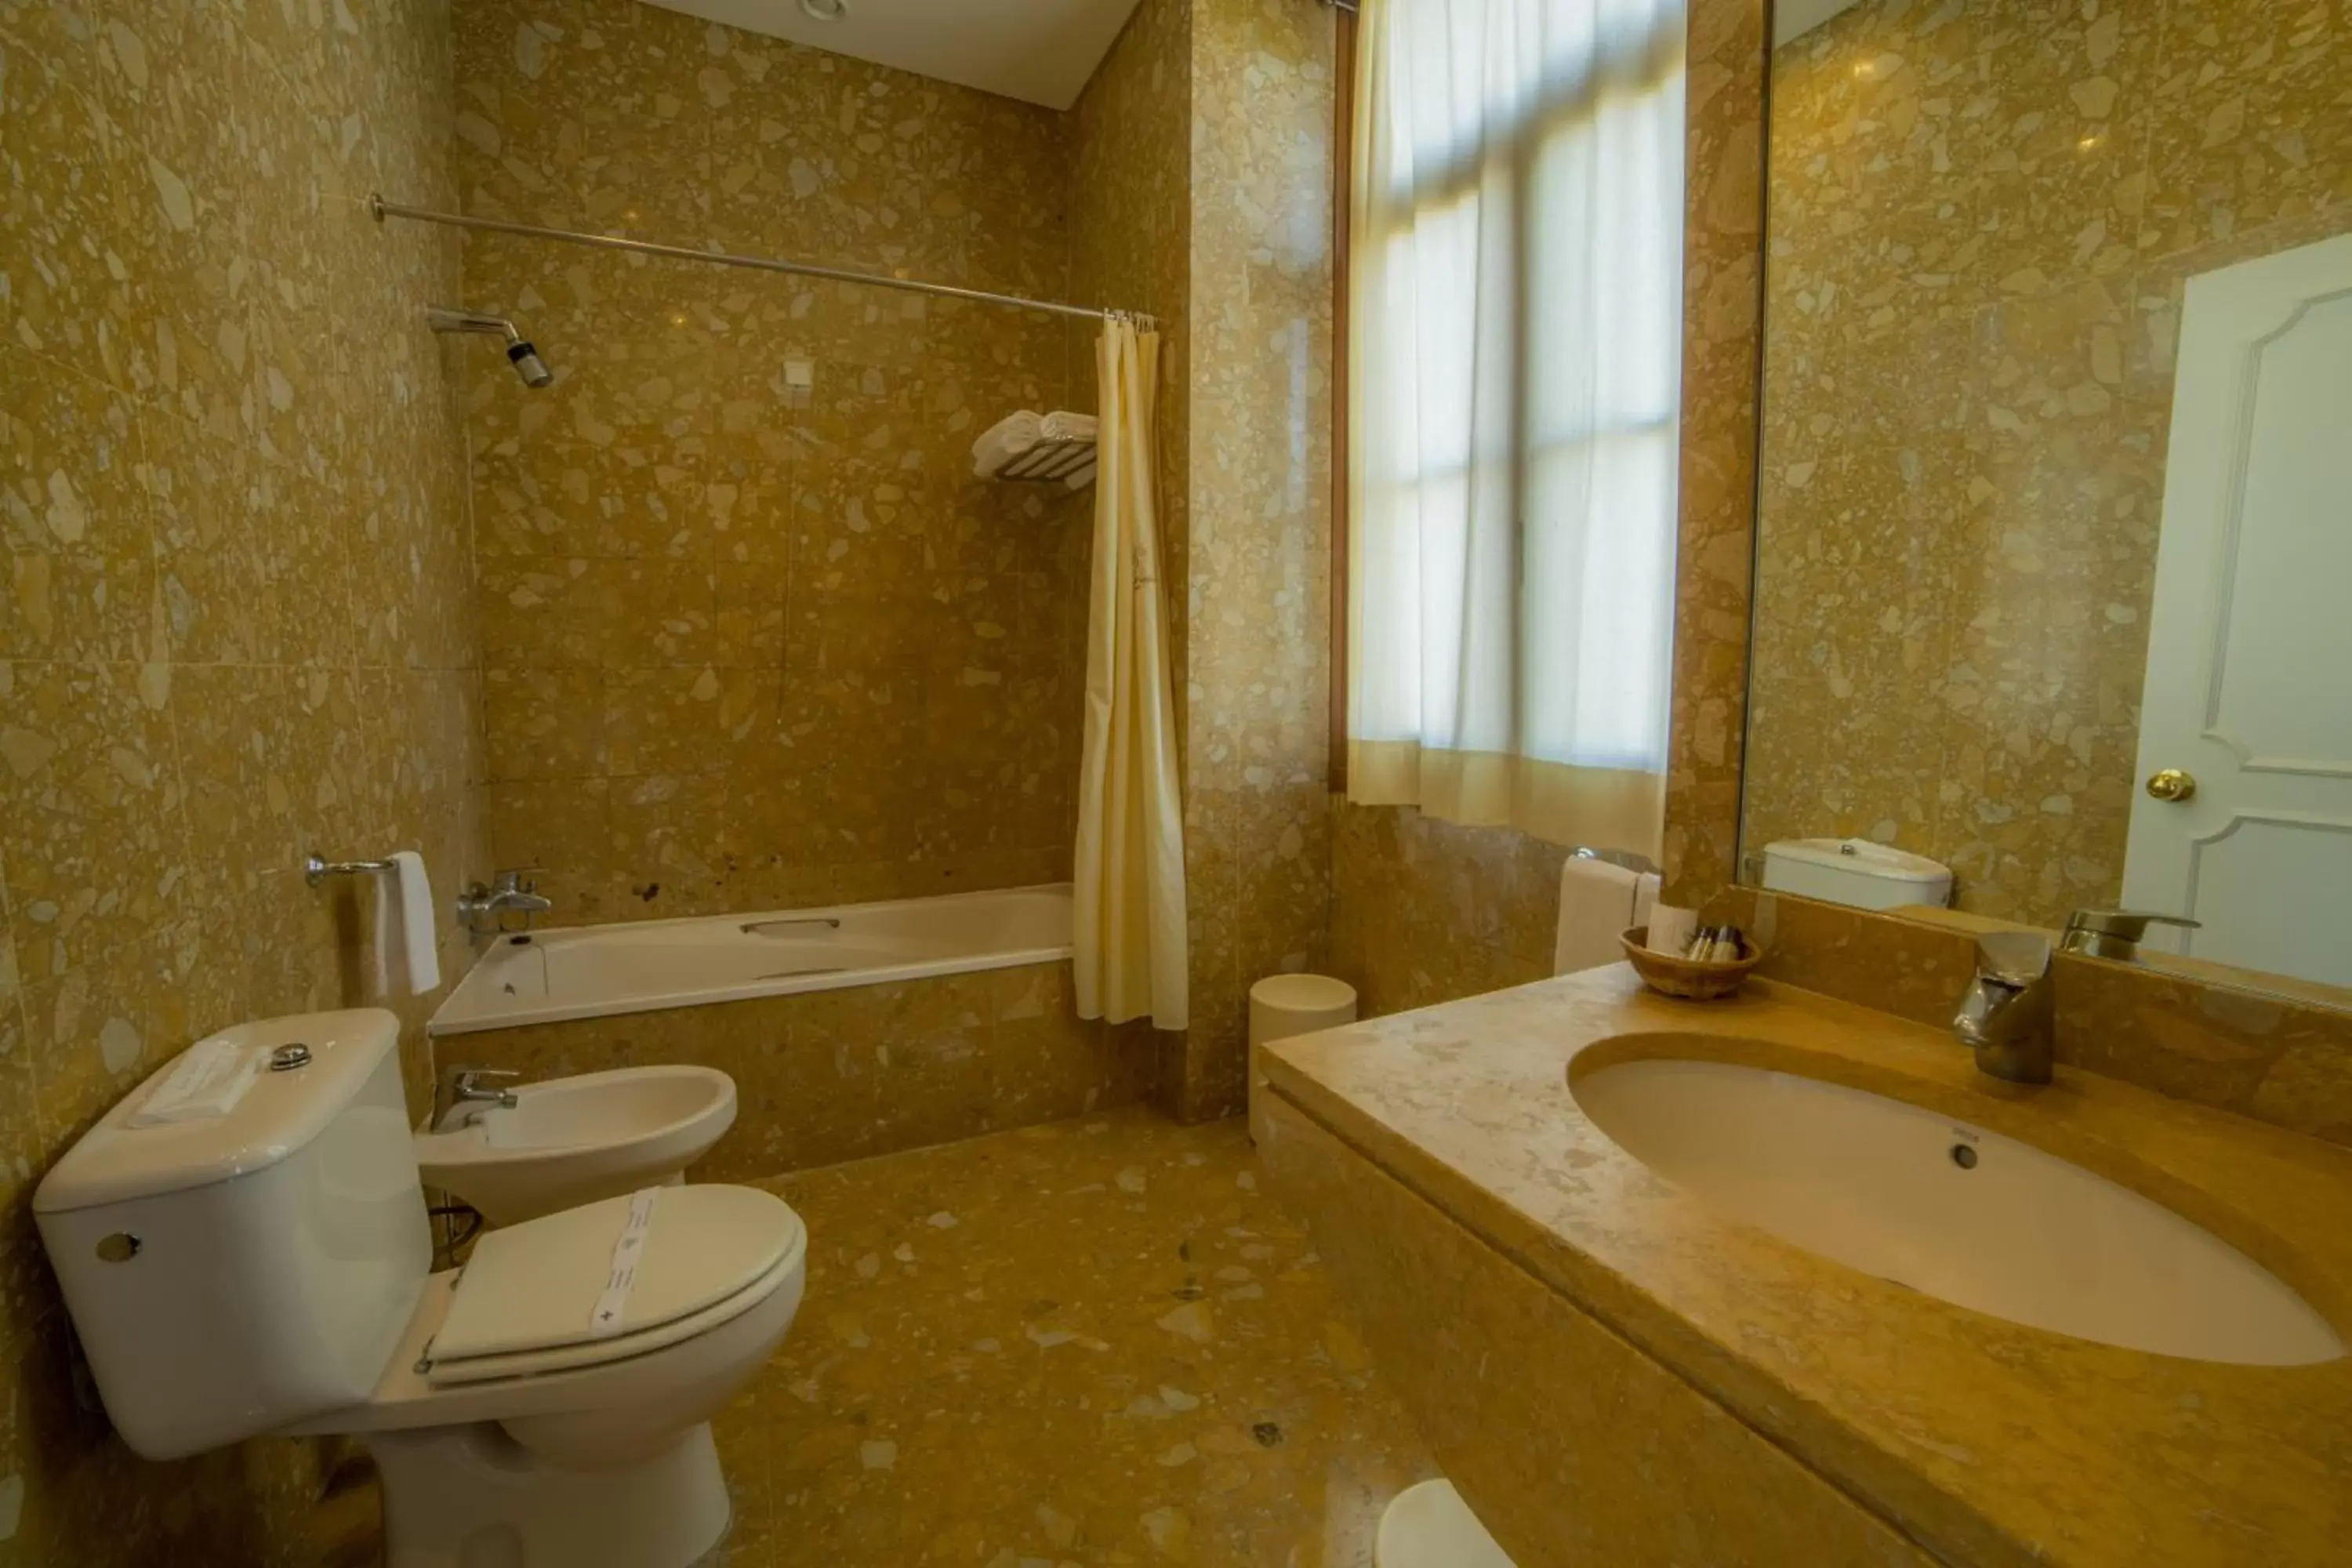 Bathroom in Hotel do Elevador